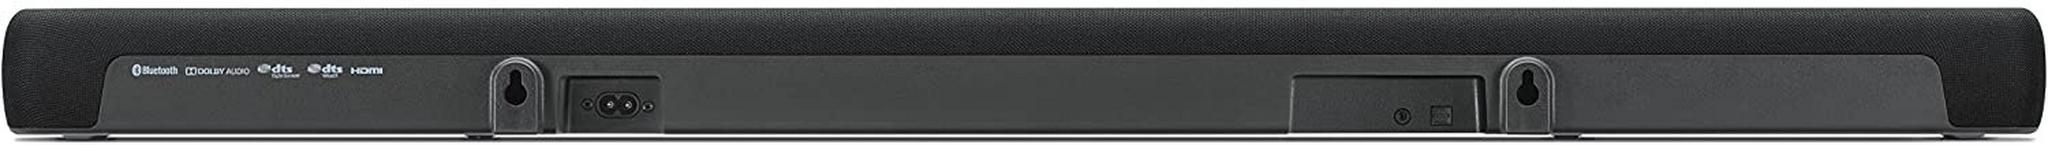 Yamaha 2.1 Channel Soundbar System 200W (YAS-207) - Black